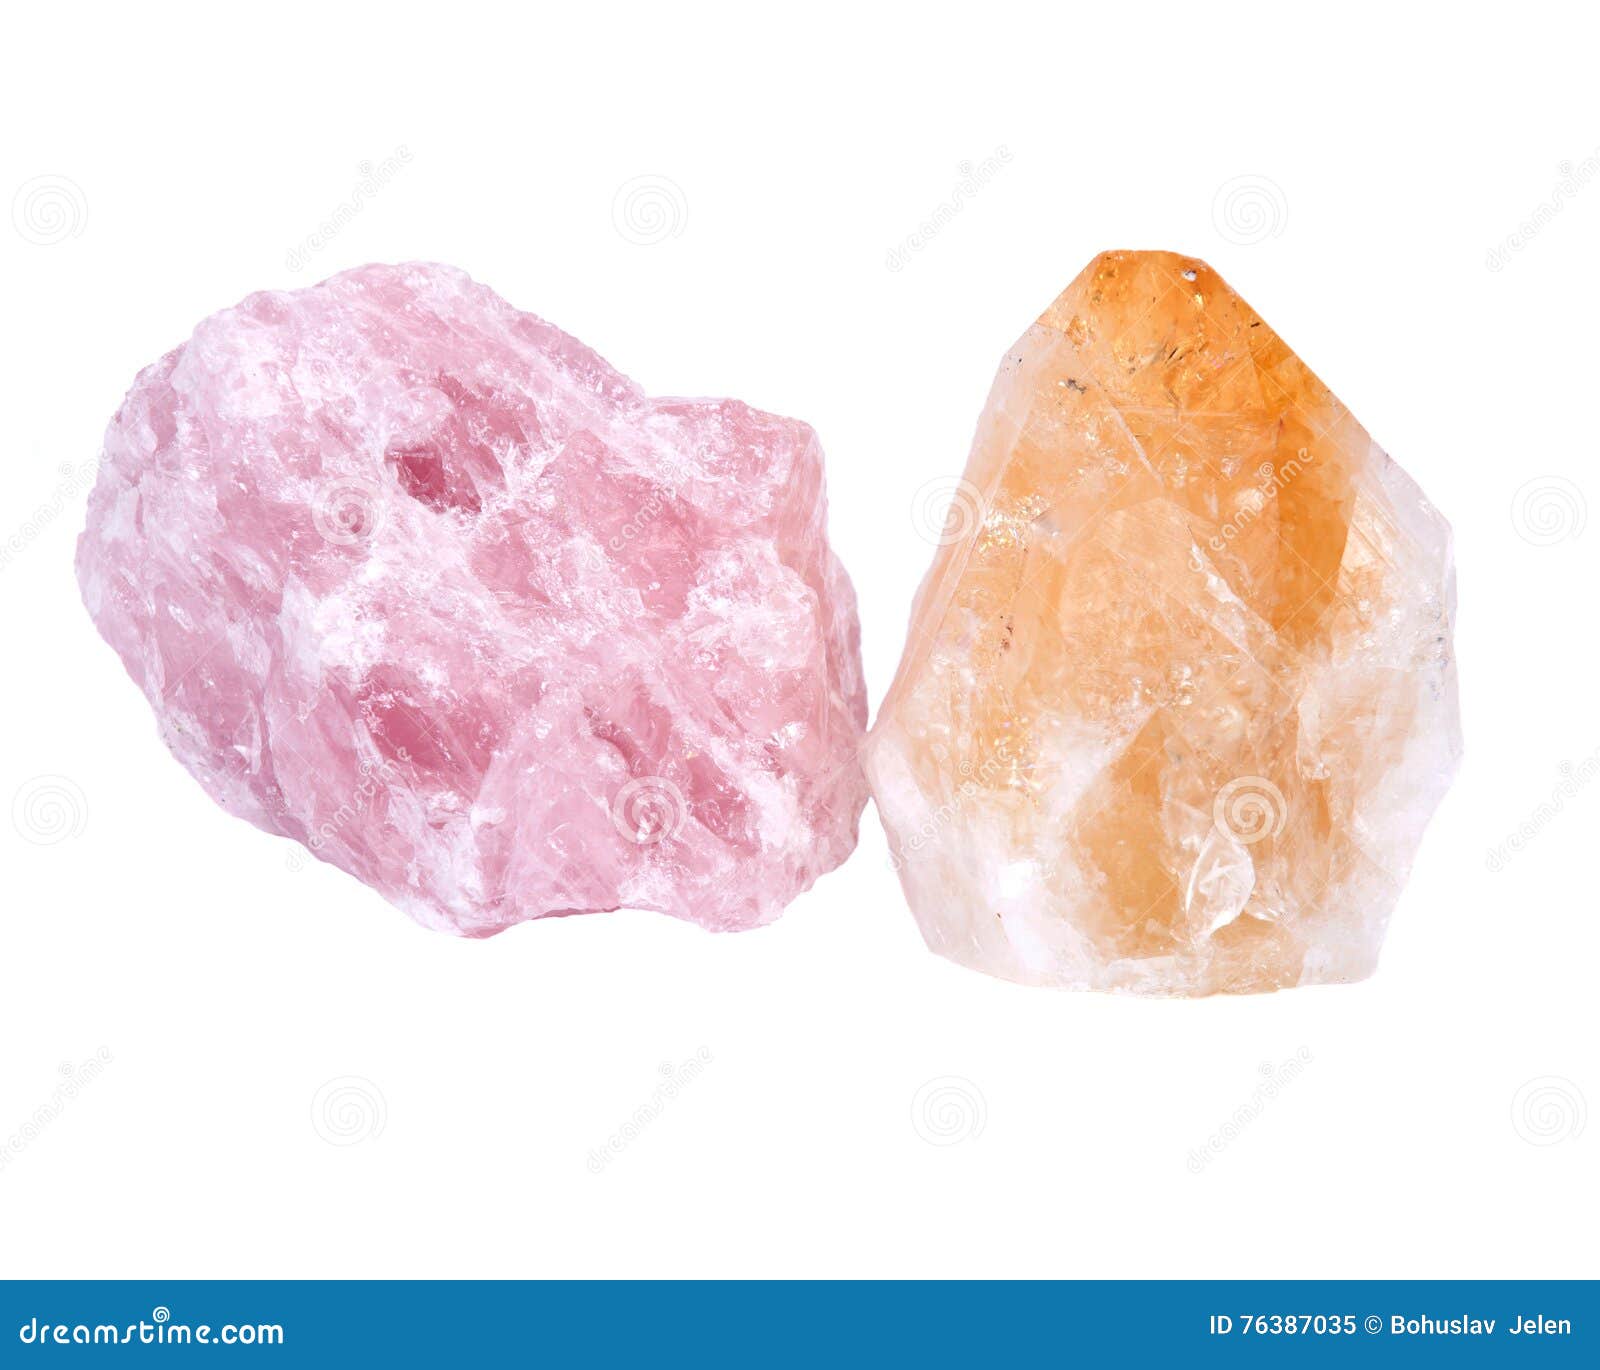 quartz rose and citrine stones